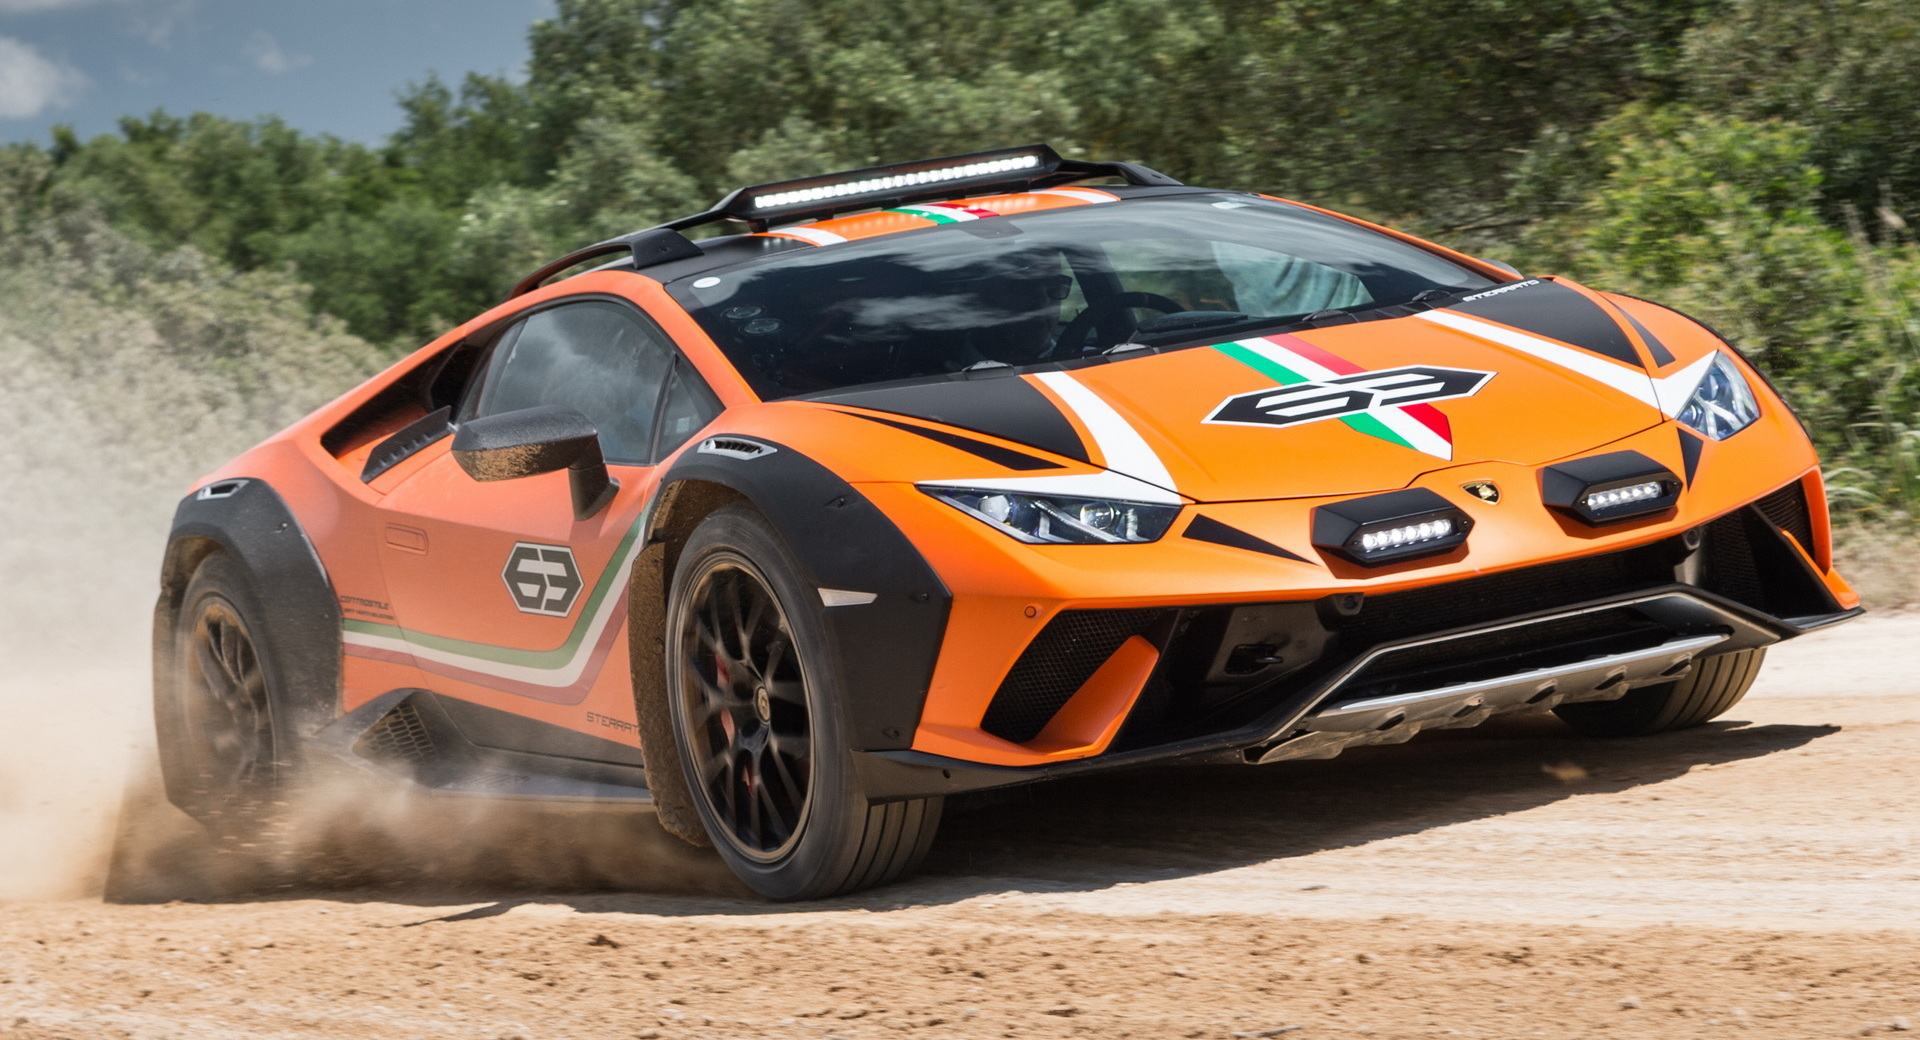 Le développement de Lamborghini Huracan Sterrato a commencé avec un prototype surélevé et une piste de terre